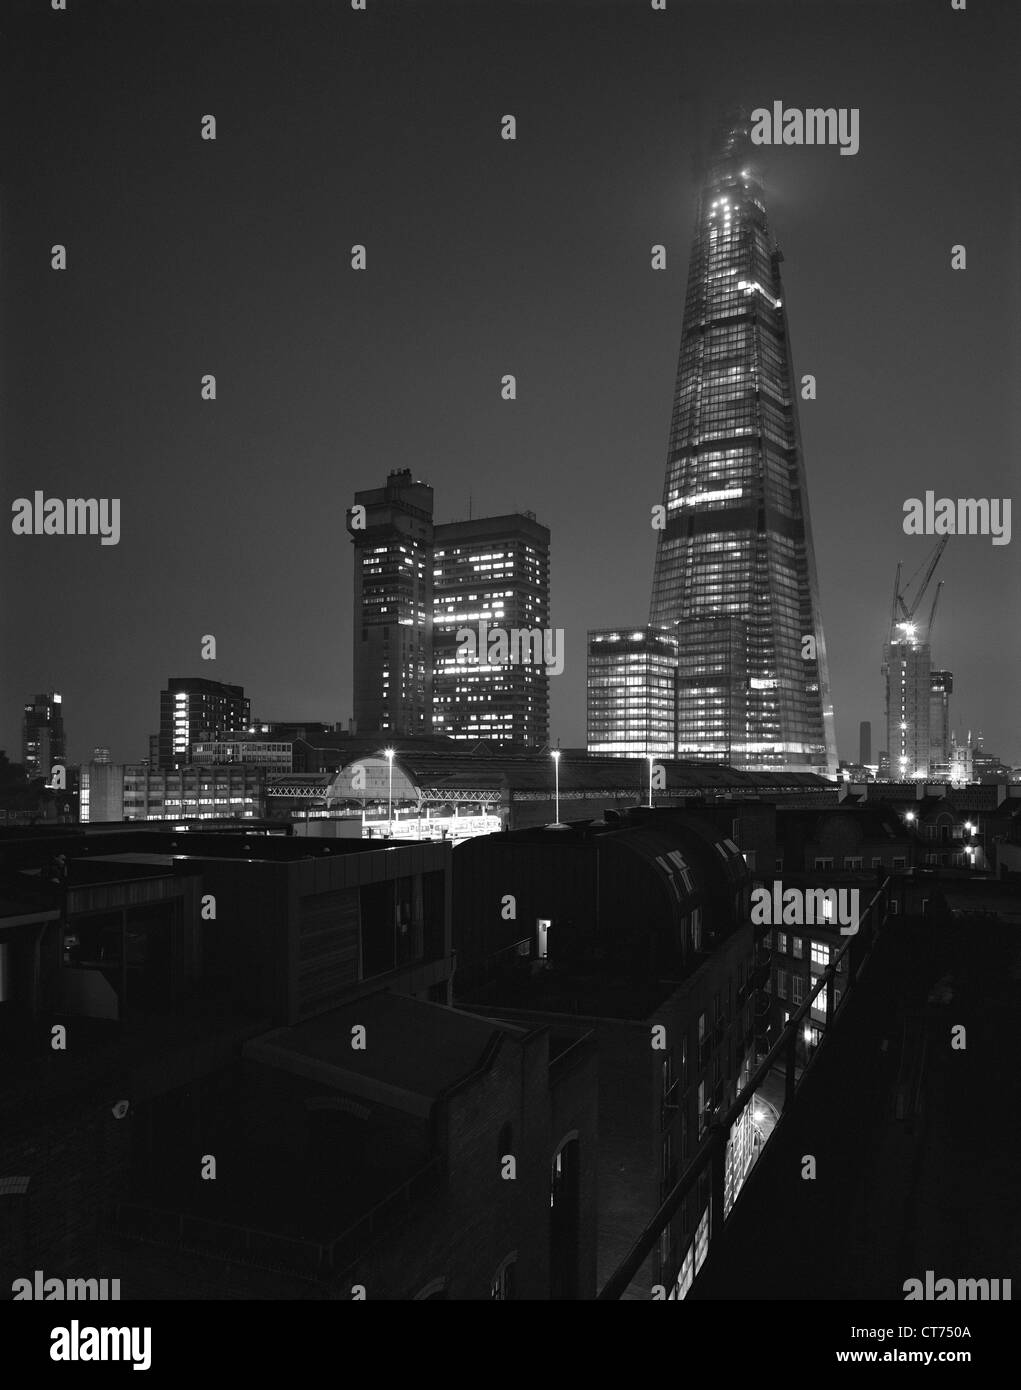 Shard, Londra, Regno Unito. Architetto: Renzo Piano Building Workshop, 2012. Vista notturna nella nebbia d'autunno. Foto Stock